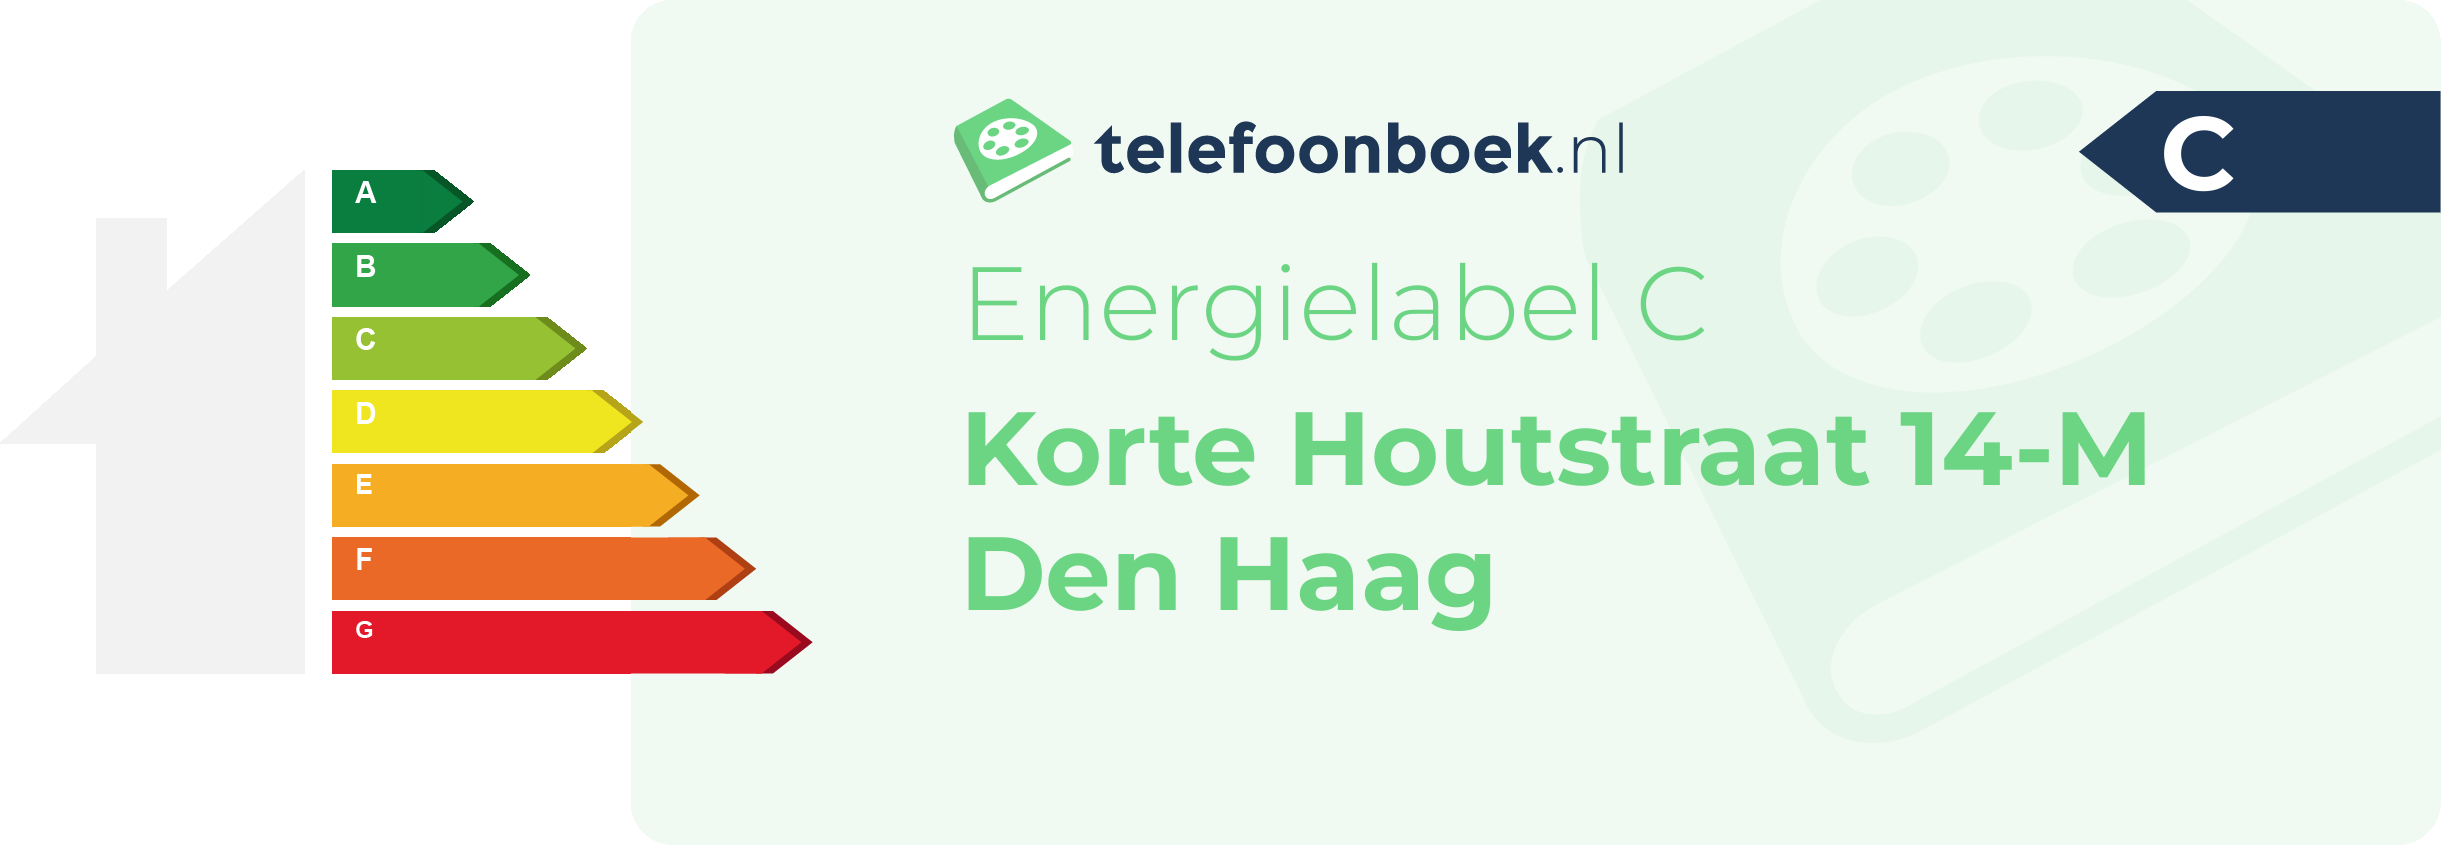 Energielabel Korte Houtstraat 14-M Den Haag